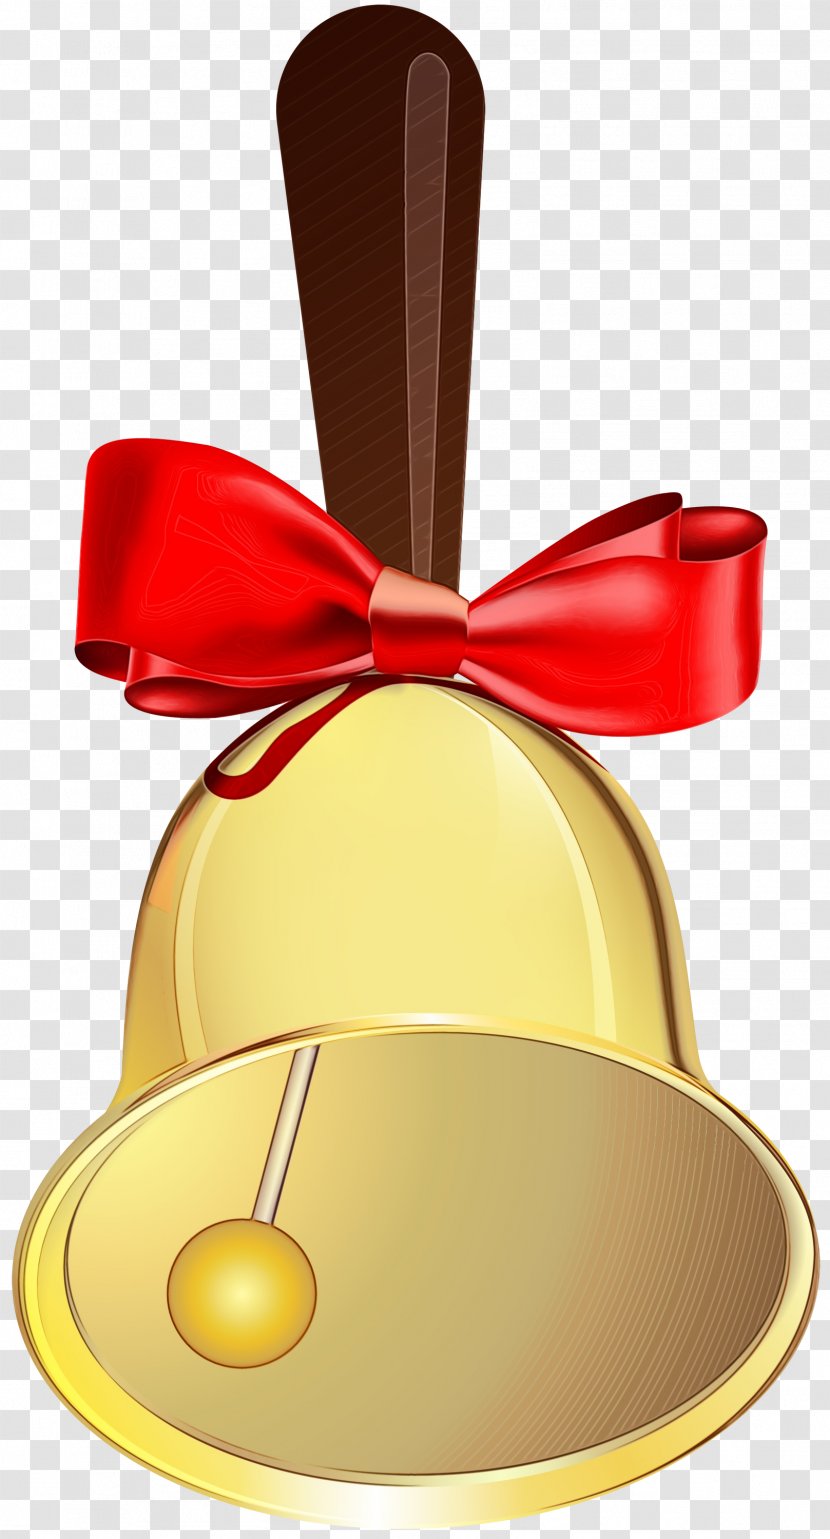 Christmas Bell Cartoon - Ornament - Handbell Transparent PNG